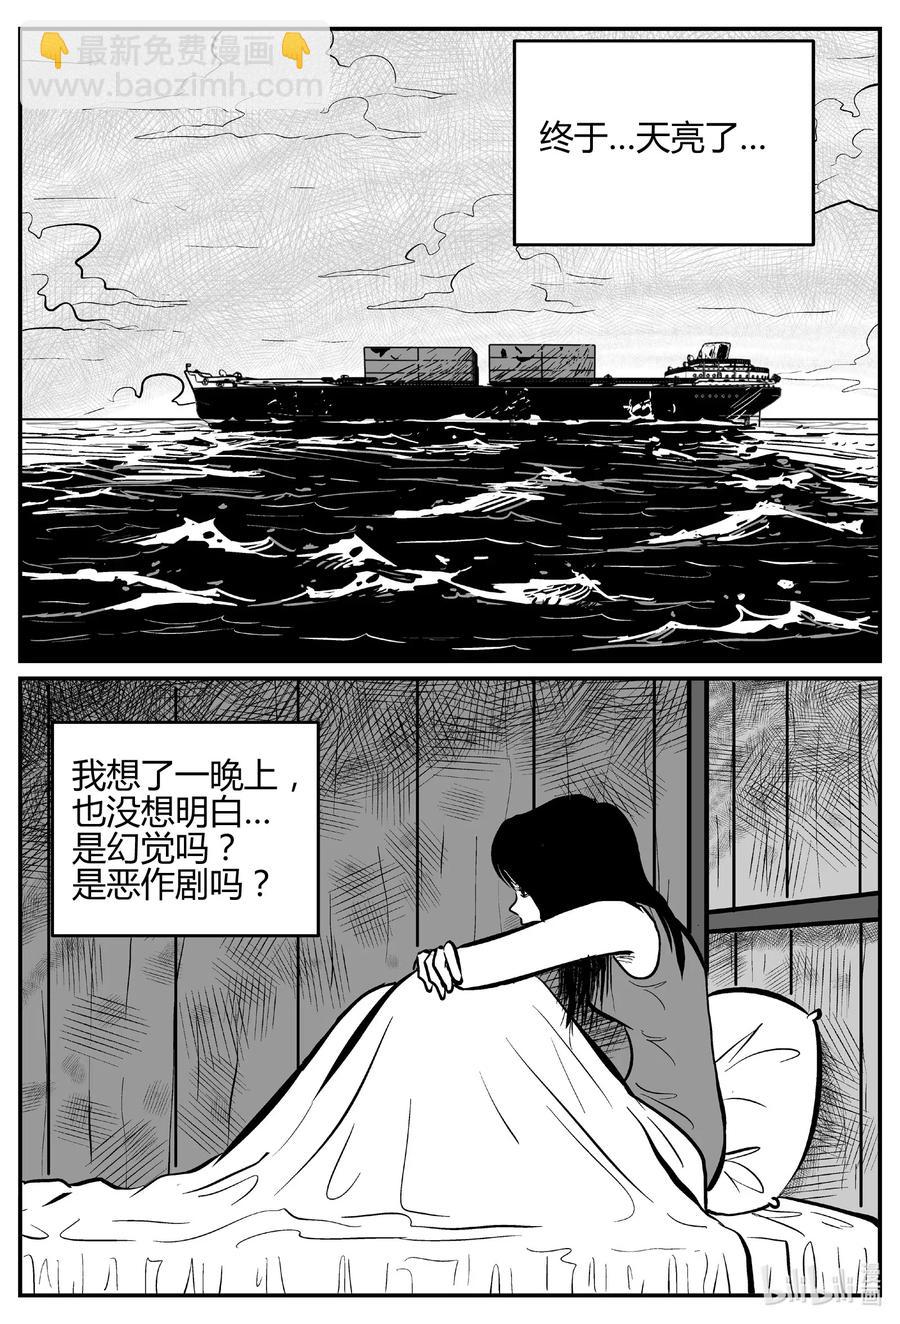 小智怪談 - 521 幽靈船 - 2